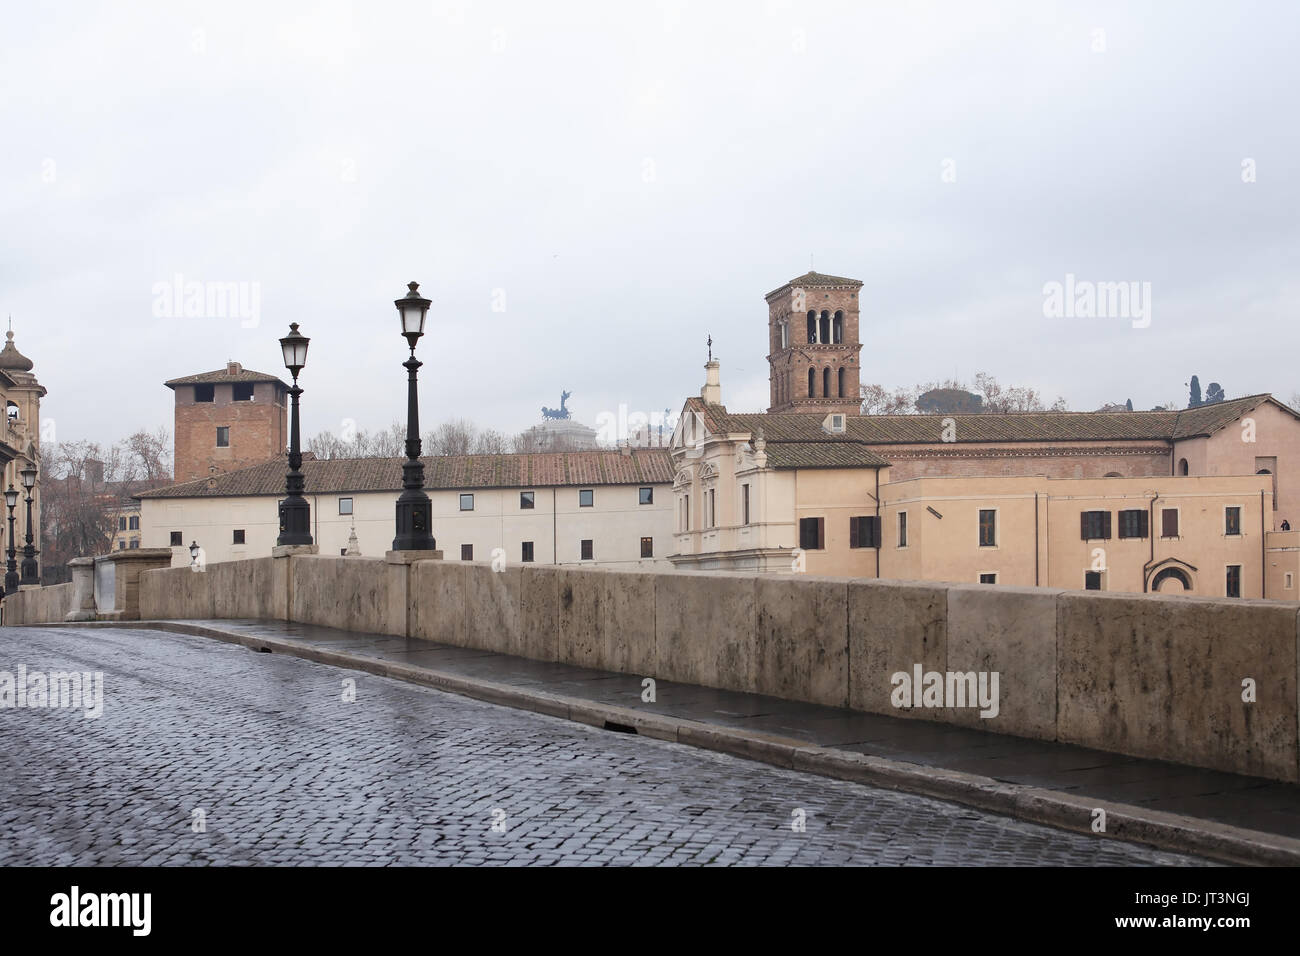 Tranguil städtische Szene. Alte steinerne Brücke mit Straßenlaternen, Rom, Italien Stockfoto